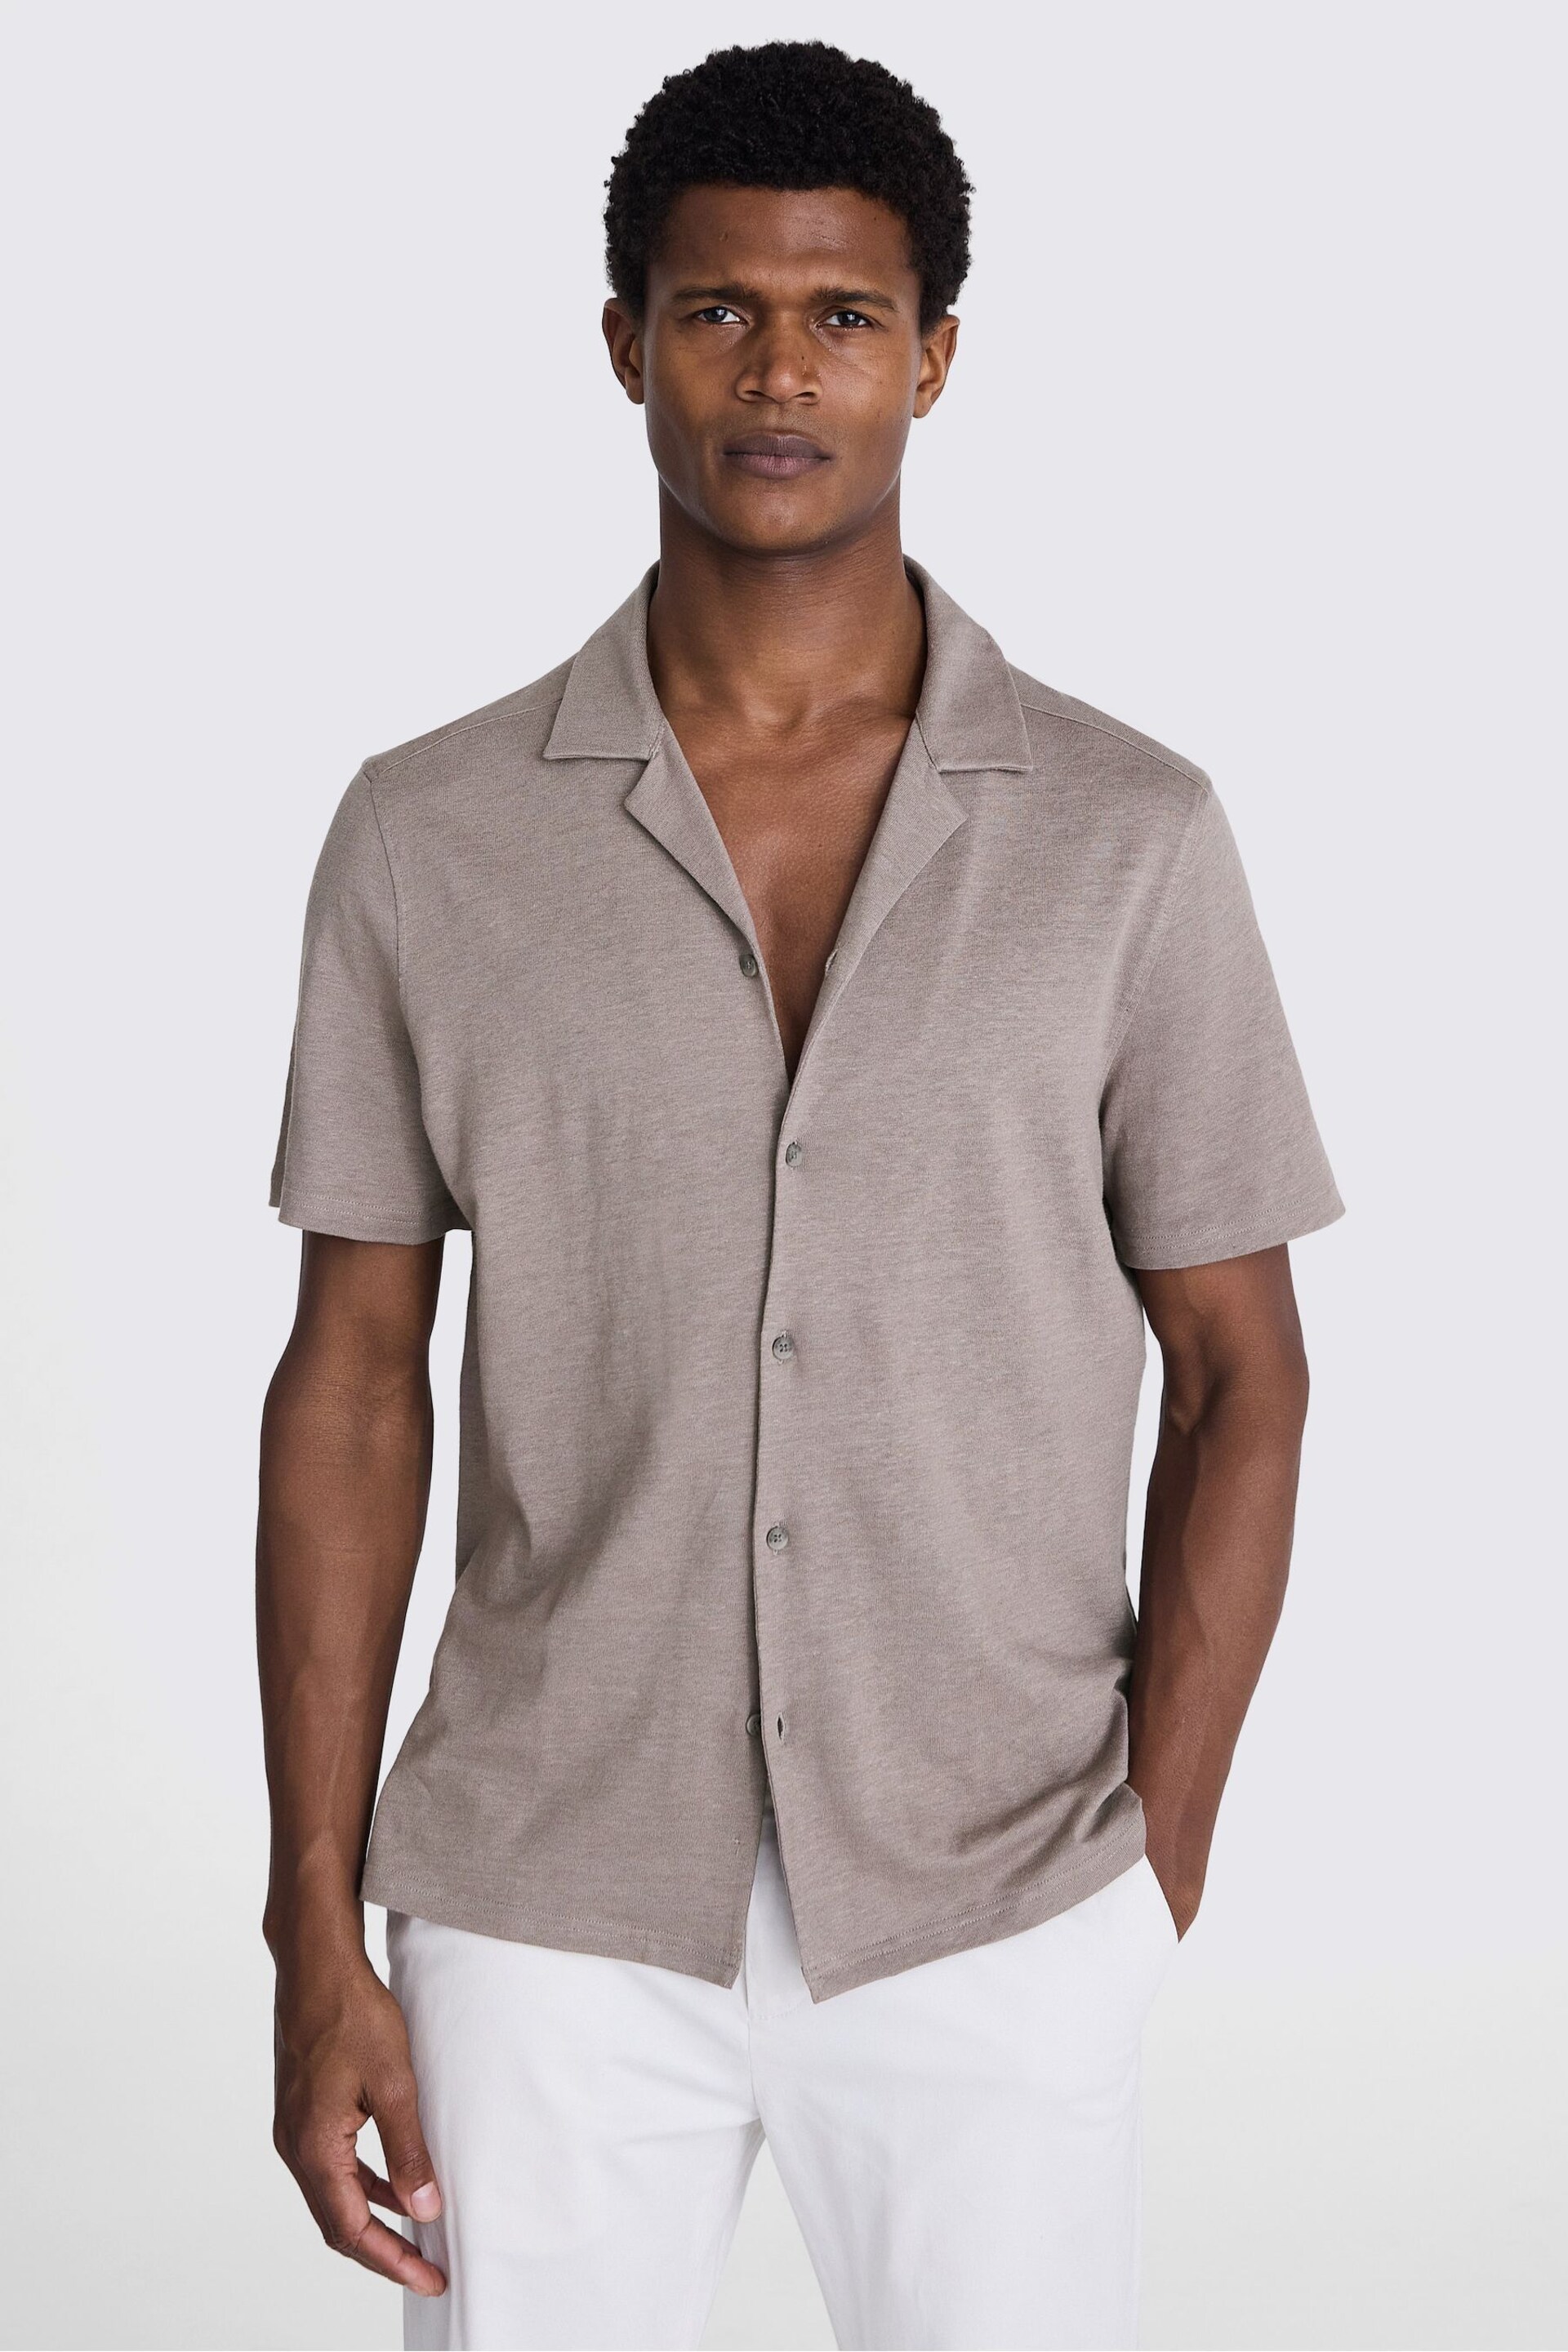 MOSS Dark Taupe Linen Blend Knitted Cuban Collar Shirt - Image 2 of 3